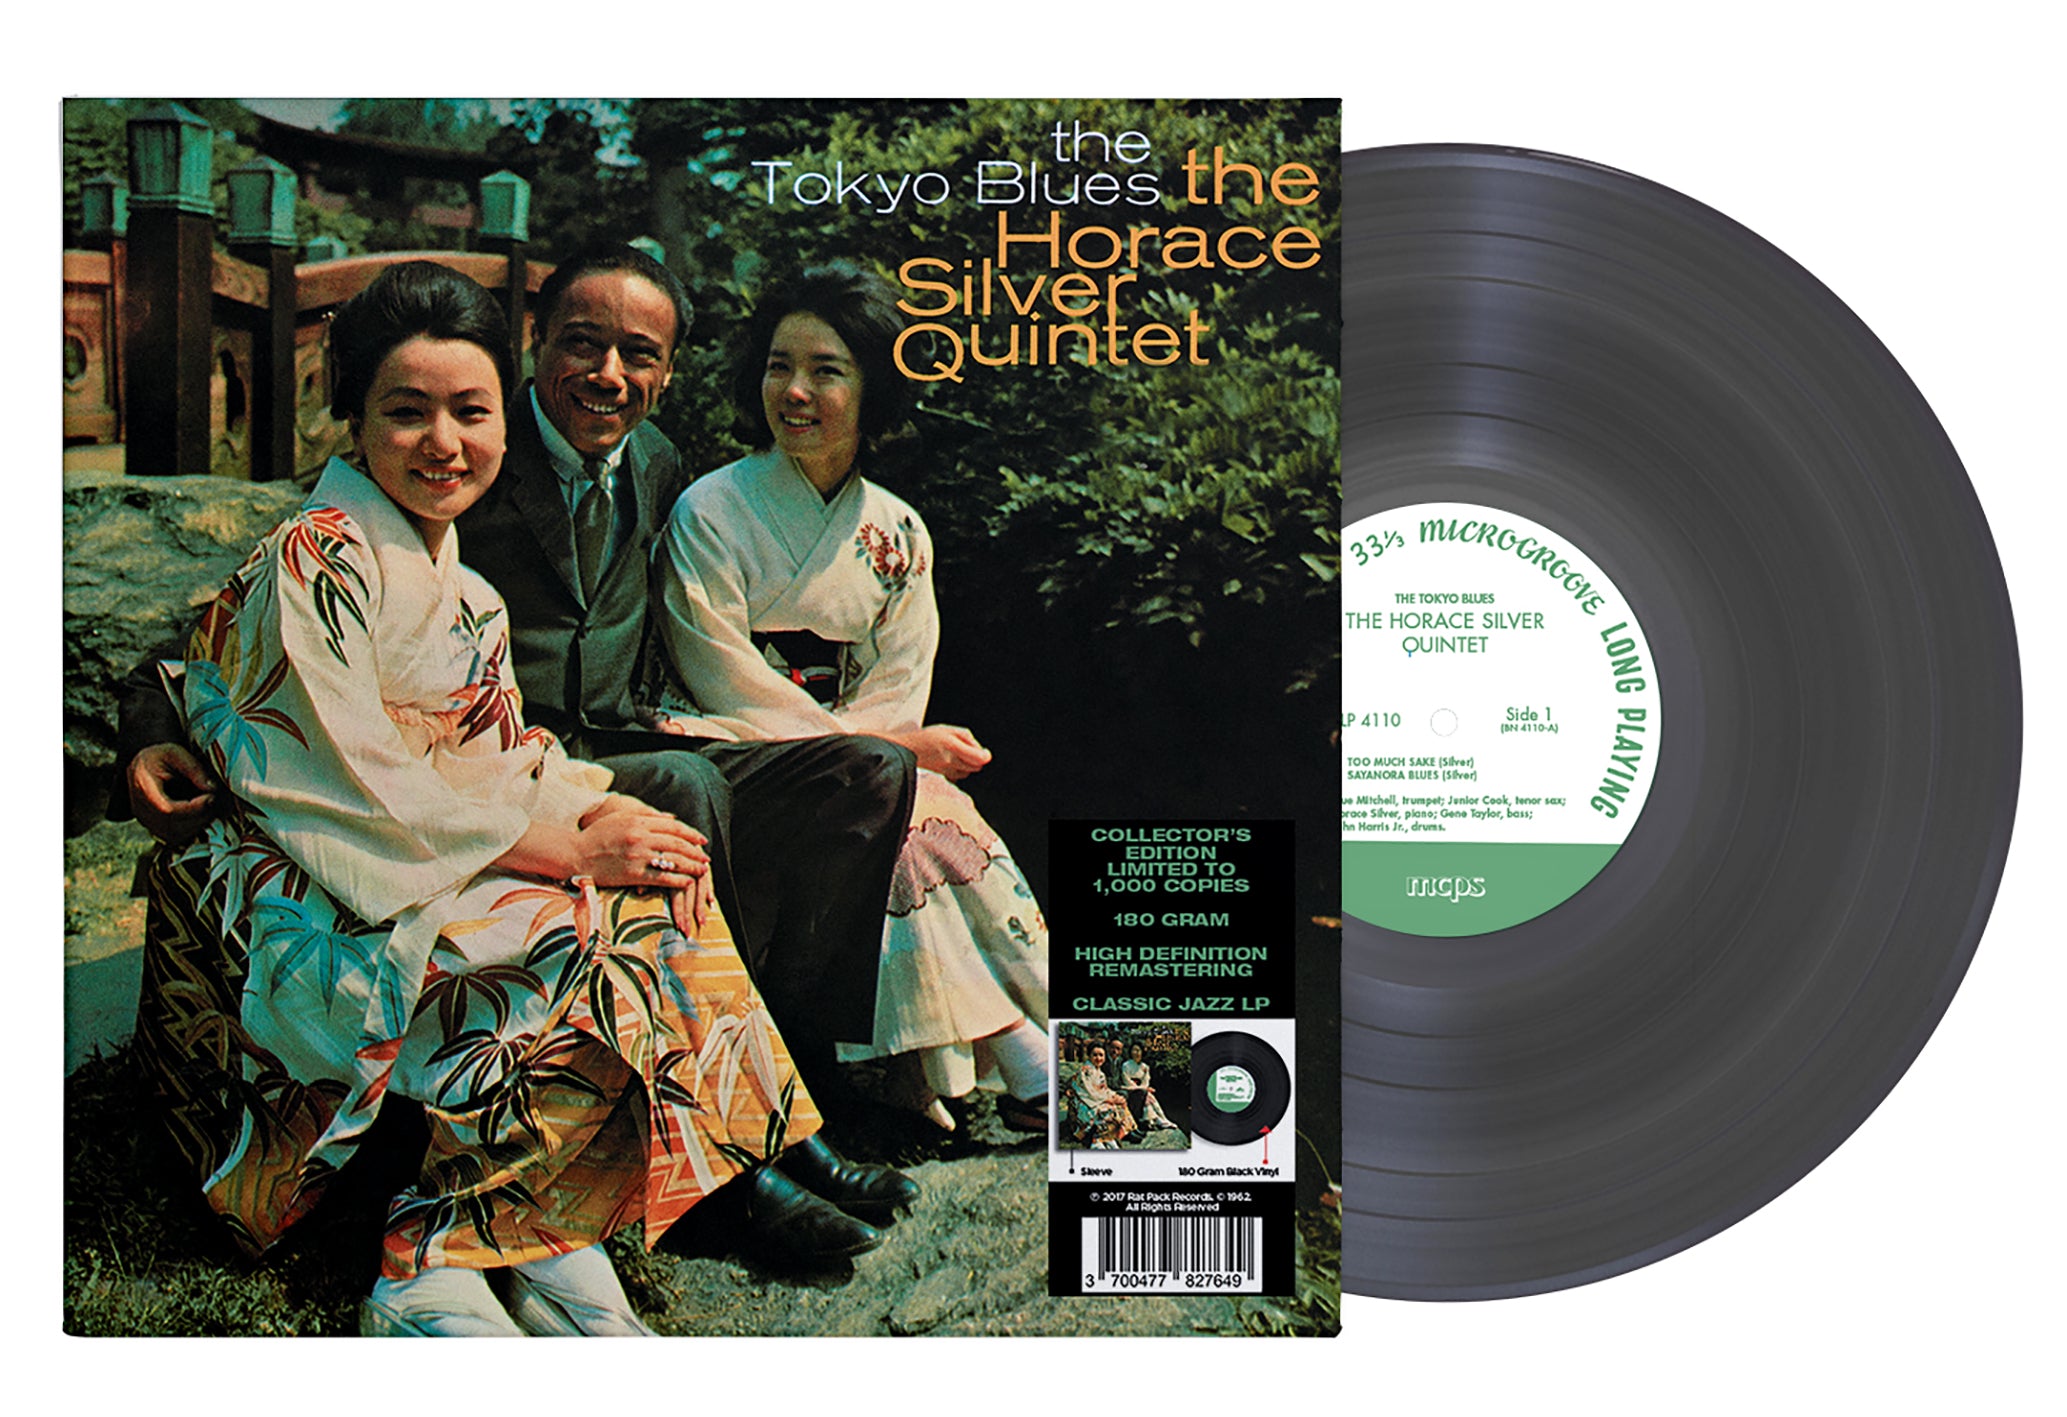 The Horace Silver Quintet 33 Tours - The Tokyo Blues Vinyl